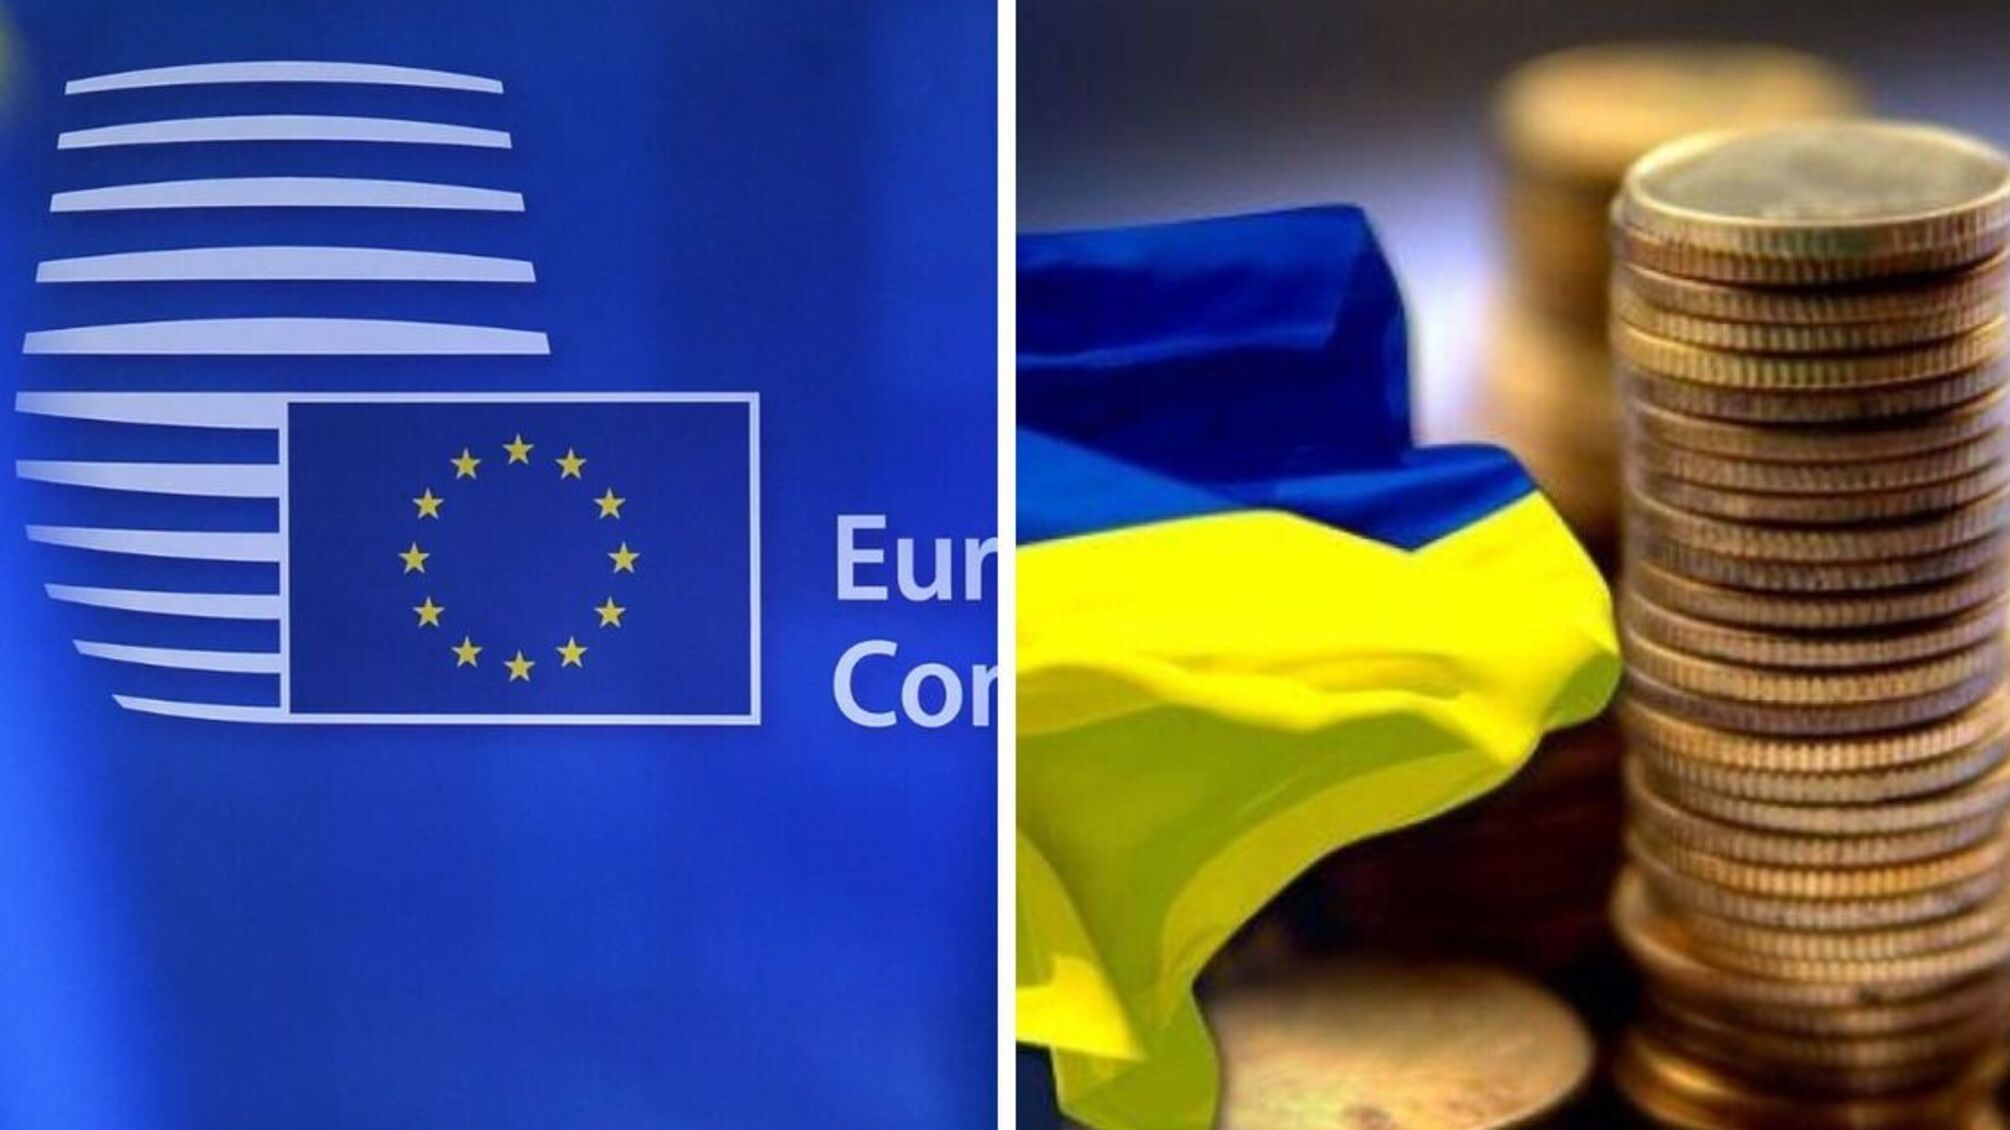 ЕС выделяет Украине 5 миллиардов евро: на что пойдут деньги